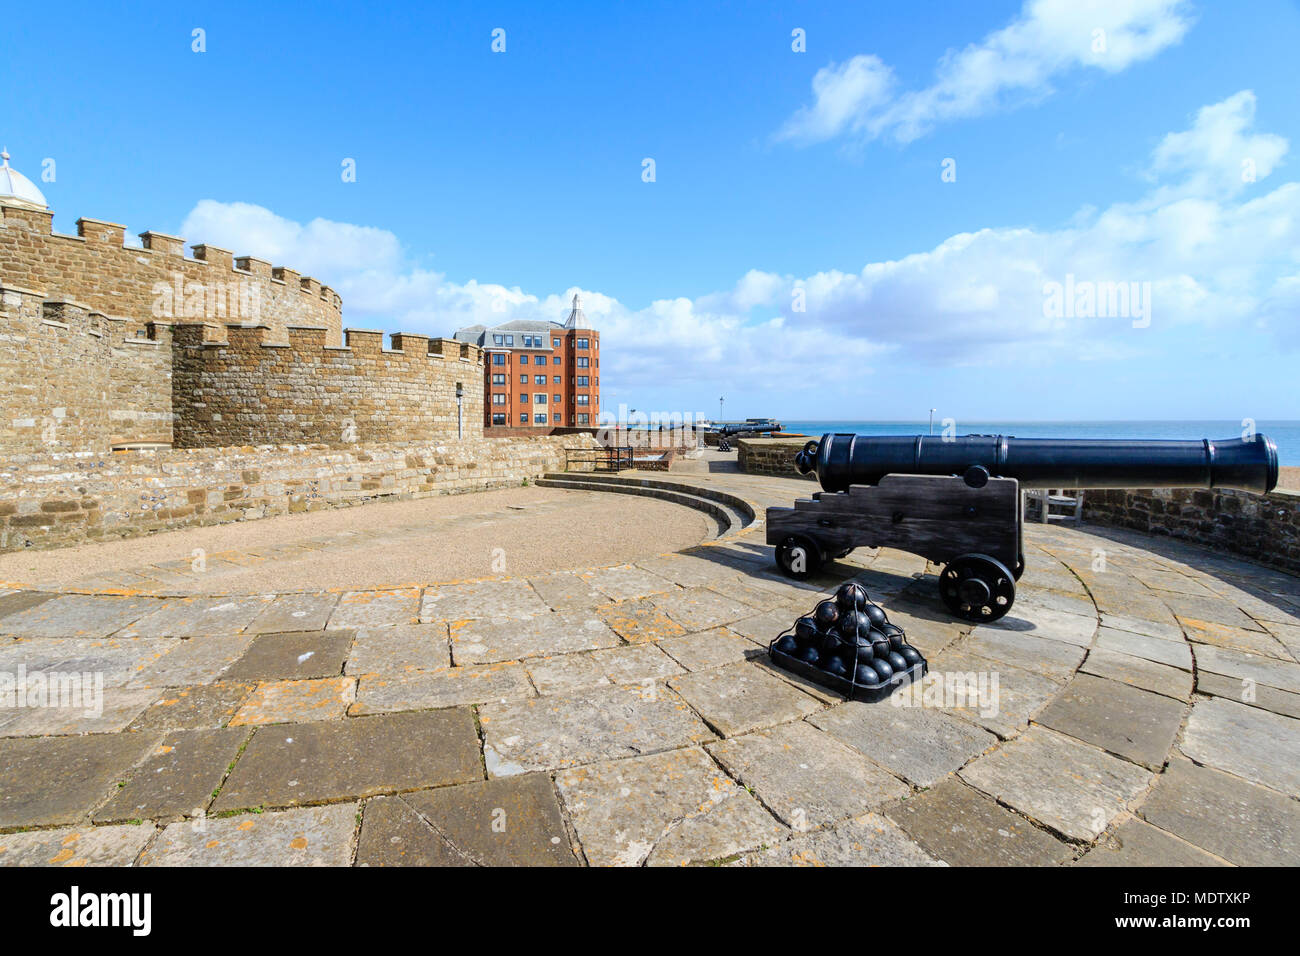 Il castello di trattativa, uno dei più belli in stile Tudor fortini di artiglieria in Inghilterra. 32-pounder cannon, pistola, con le palle di cannone, guardando fuori al Canale Inglese. Foto Stock